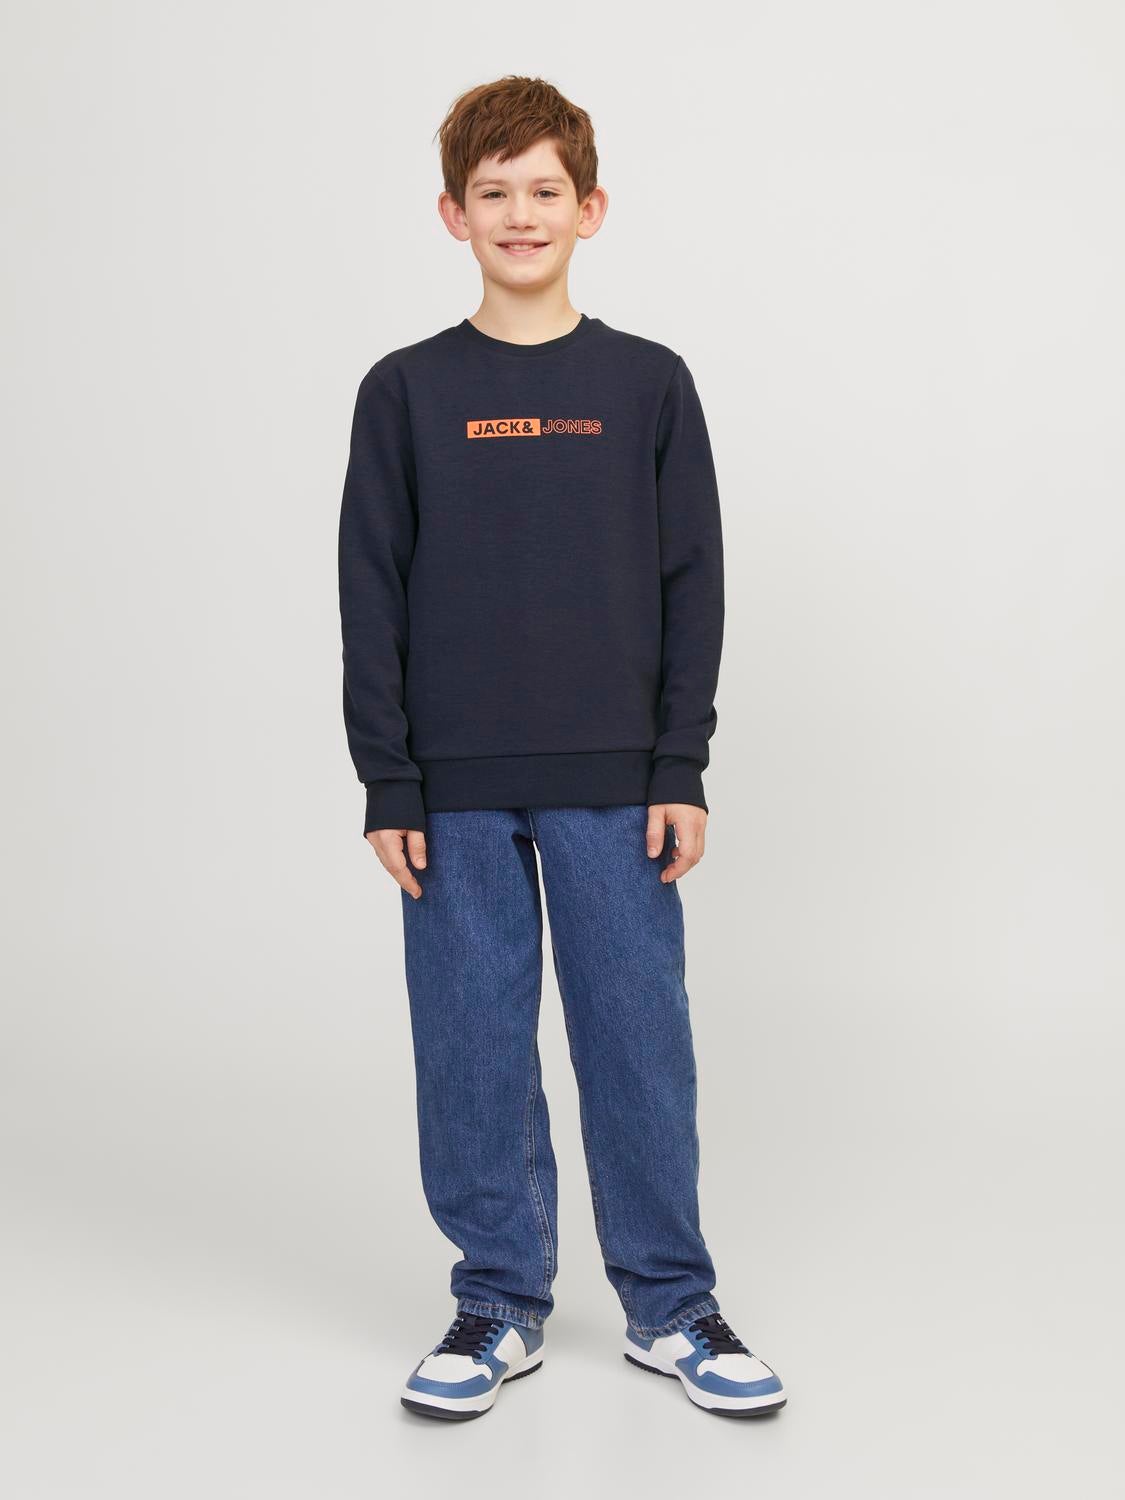 Printed Sweatshirt Junior